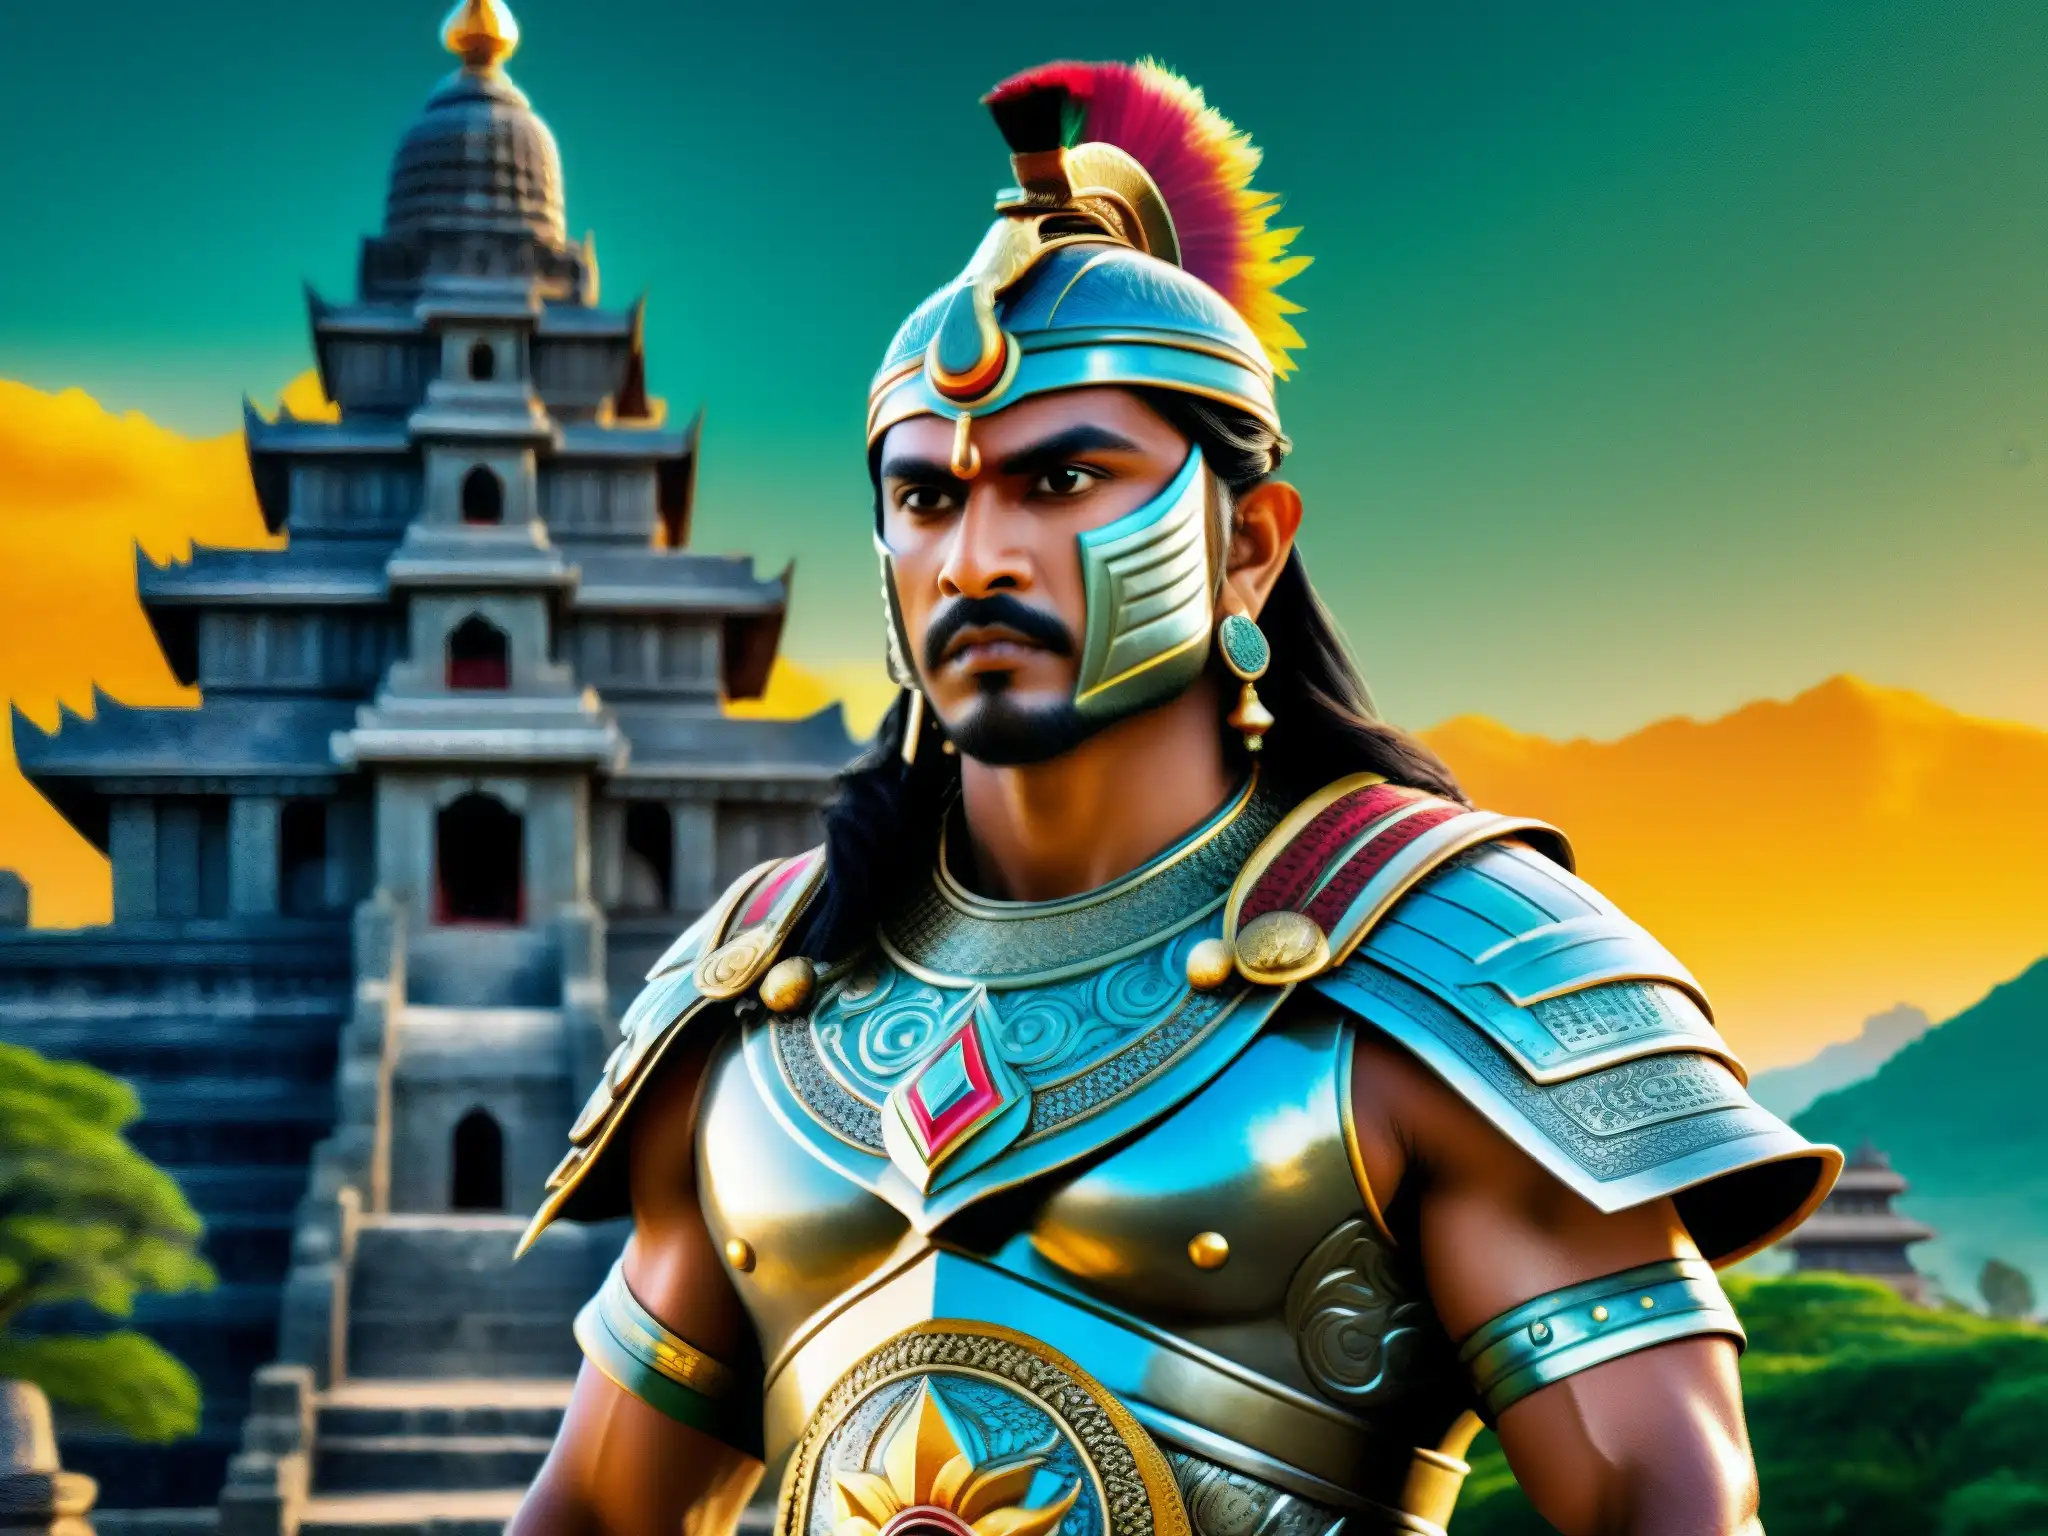 Un guerrero místico de la mitología del sur de Asia, con armadura elaborada y arma mística, frente a antiguos templos y exuberantes paisajes